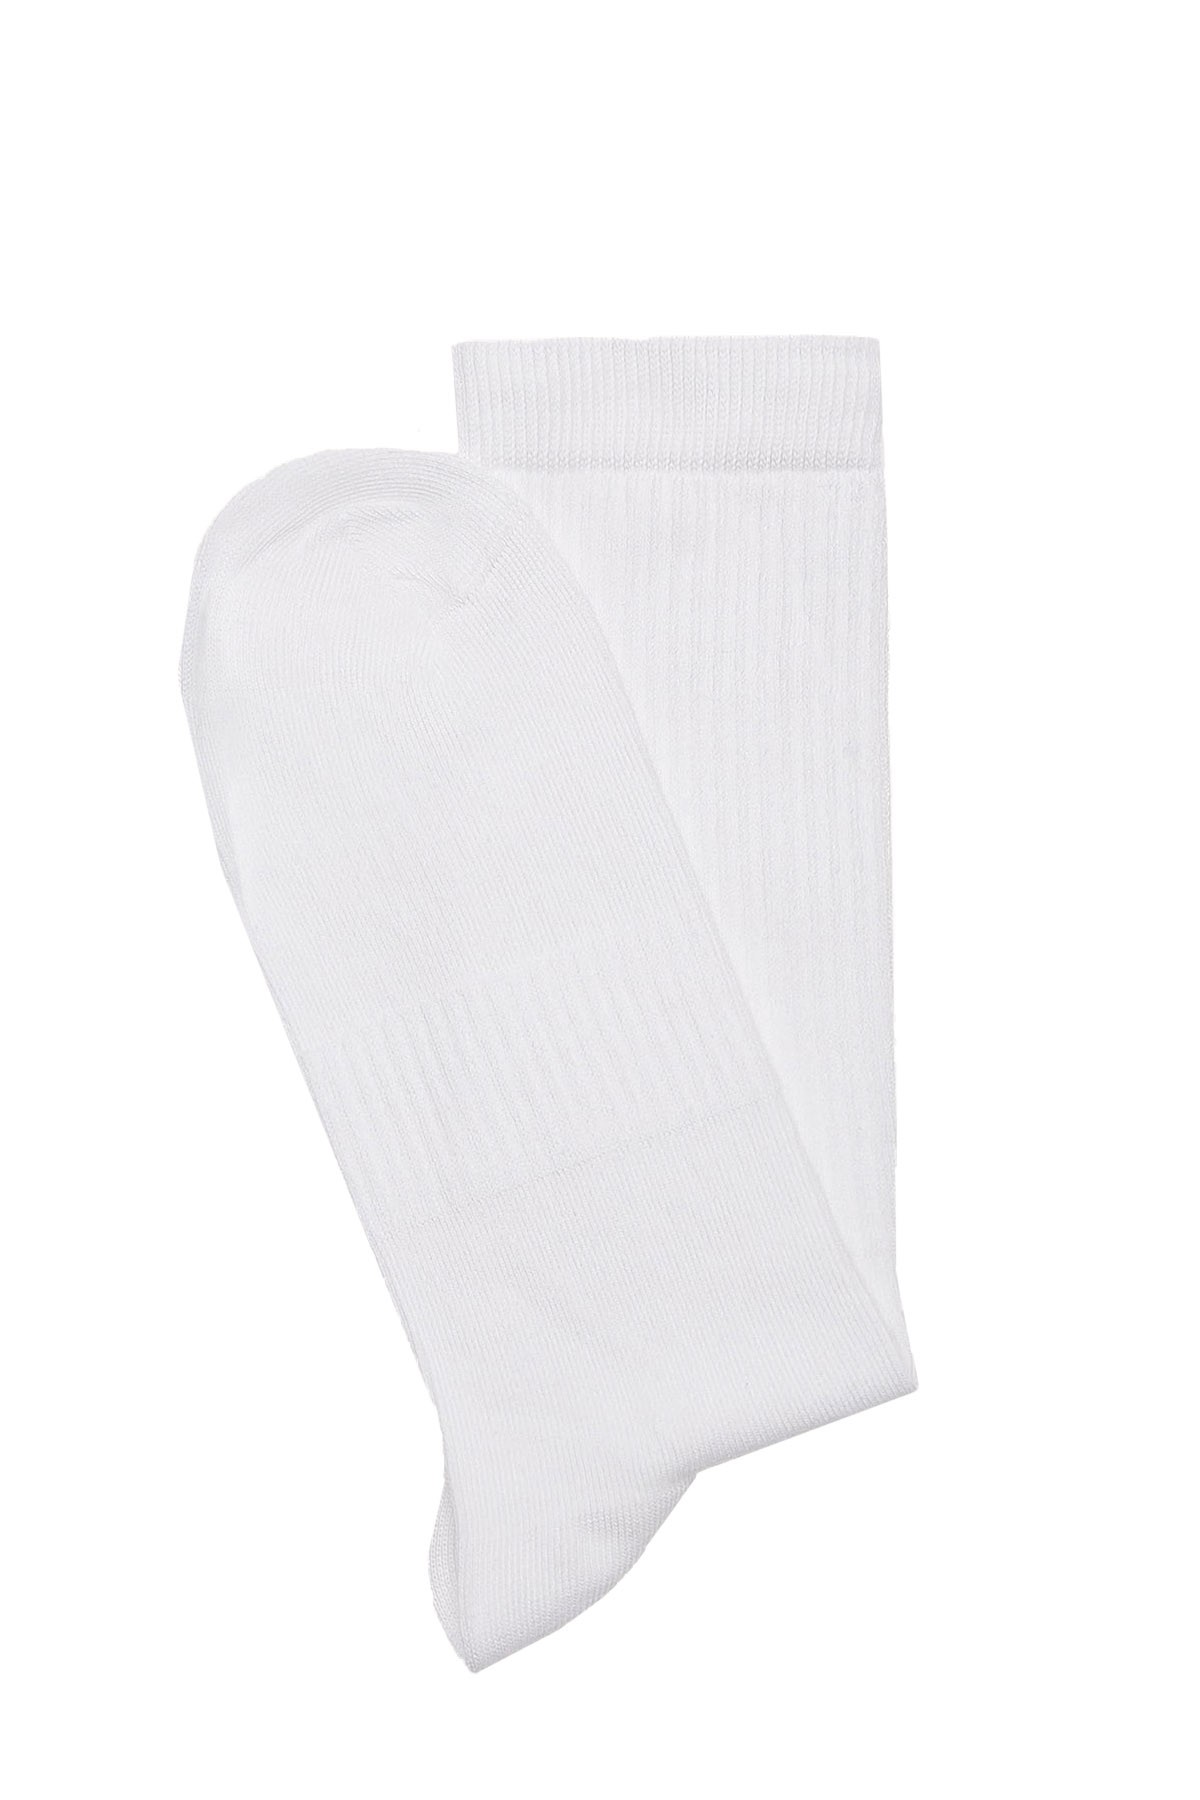 Fitilli Basic Spor Çorap (36-44) - BEYAZ